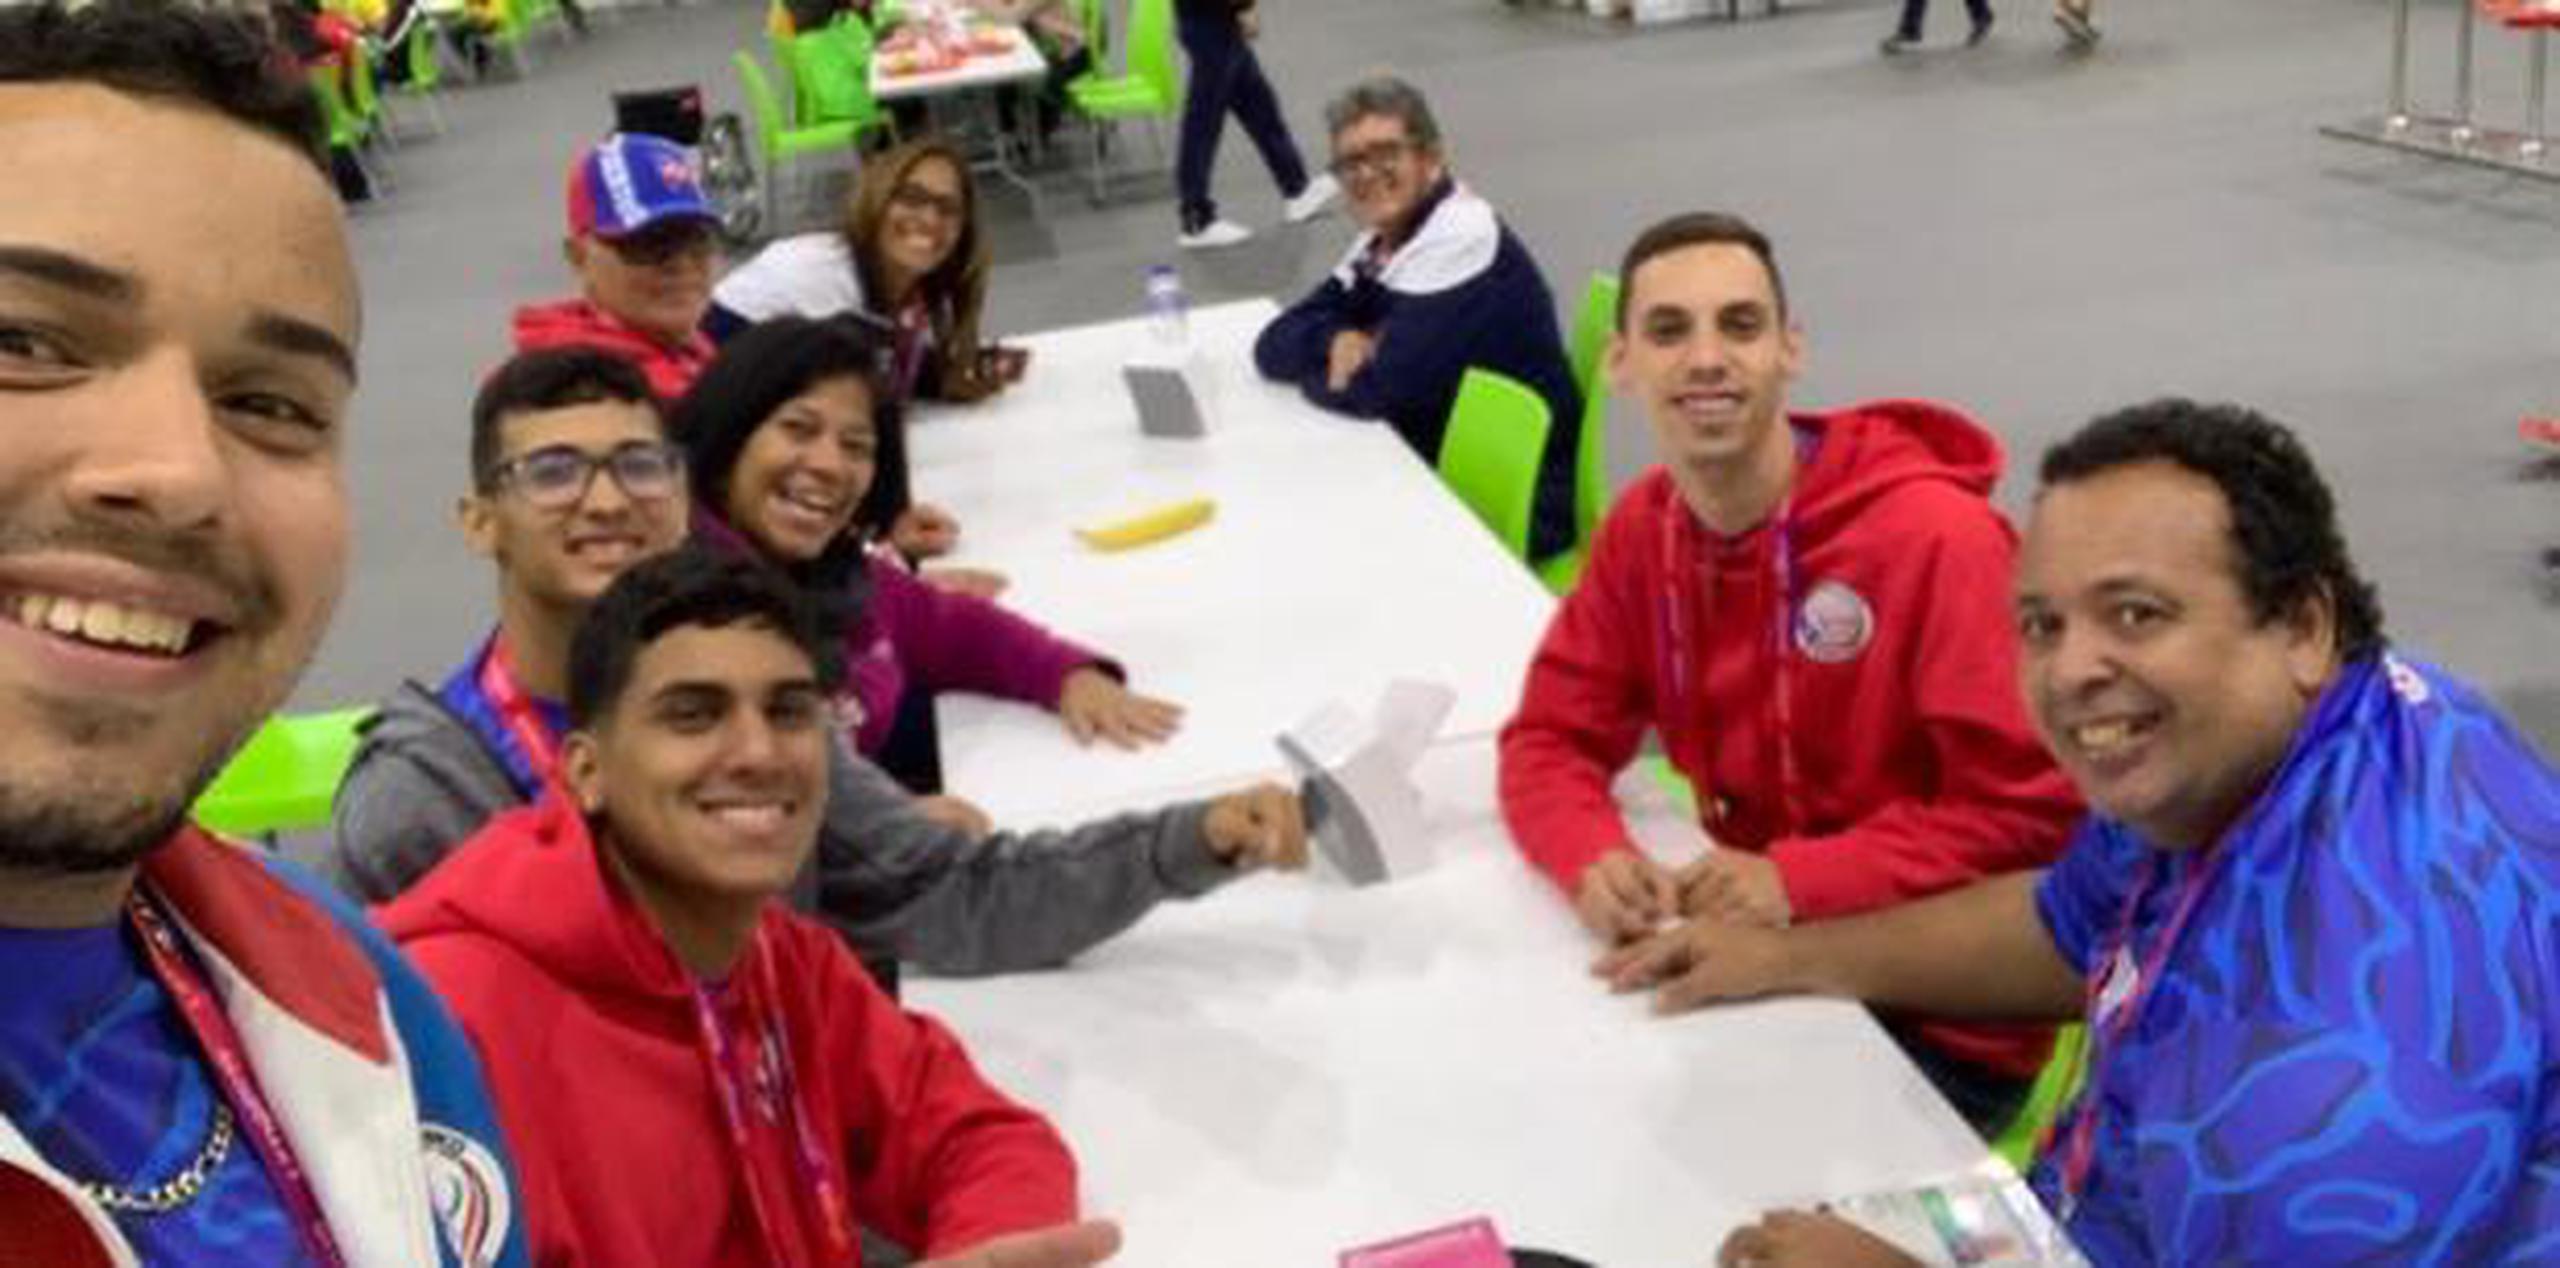 Algunos integrantes de la delegación boricua se tomaron un selfie a su llegada ayer al comedor de la villa parapanamericana. (Suministrada)